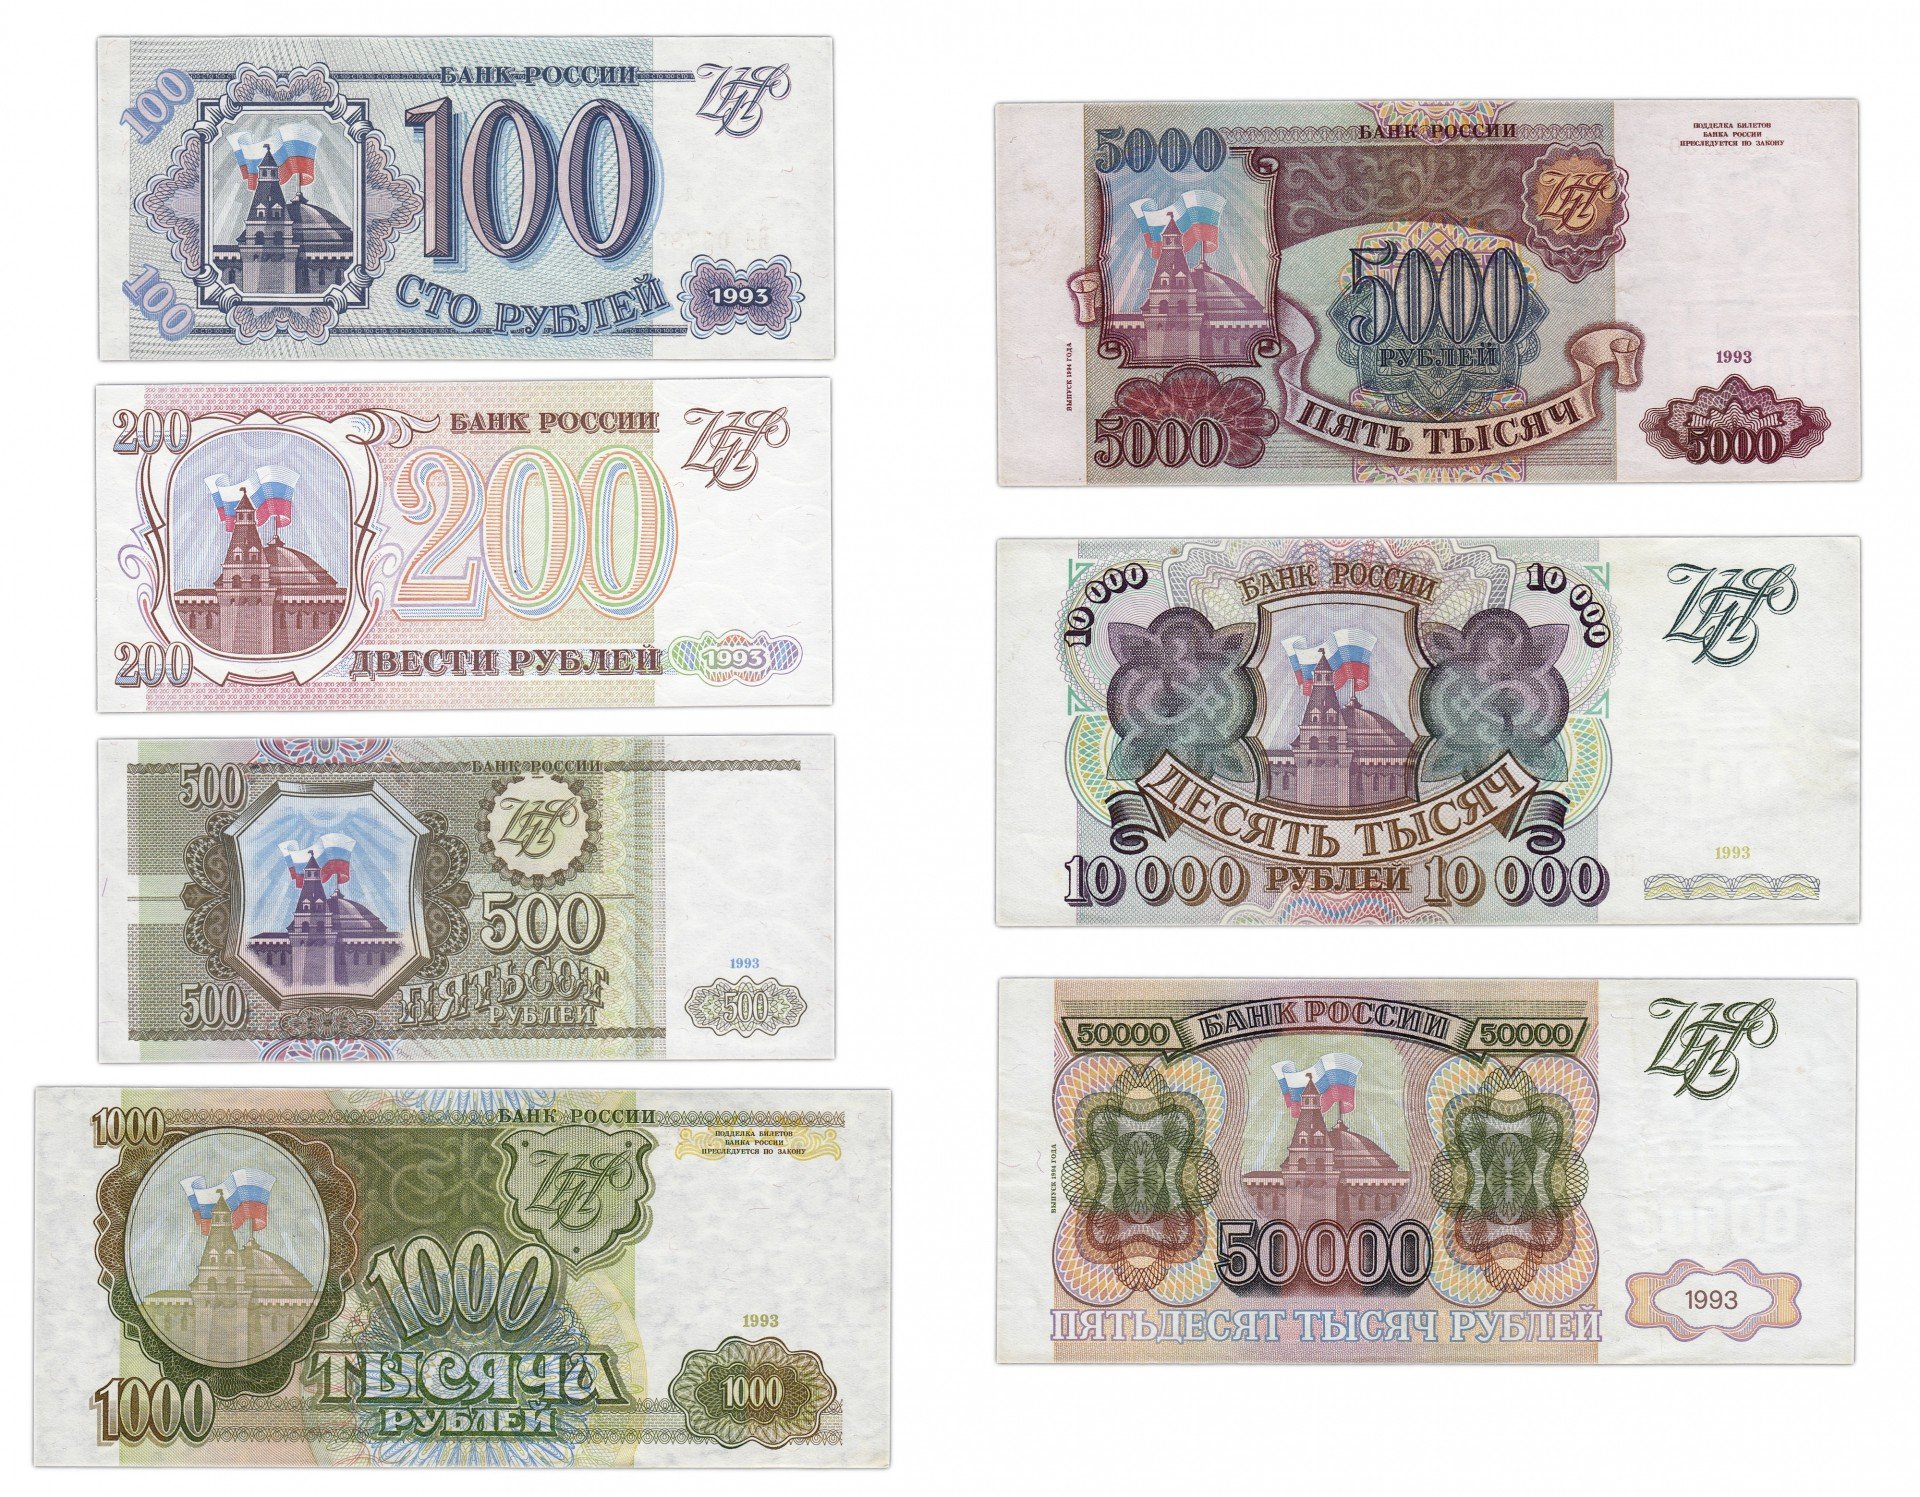 Купюры рубля 1993. Купюры 100, 200, 500 рублей 1993 года. Бумажные купюры 1993 года. Банкноты образца 1993 года. Деньги в 1993 году в России.